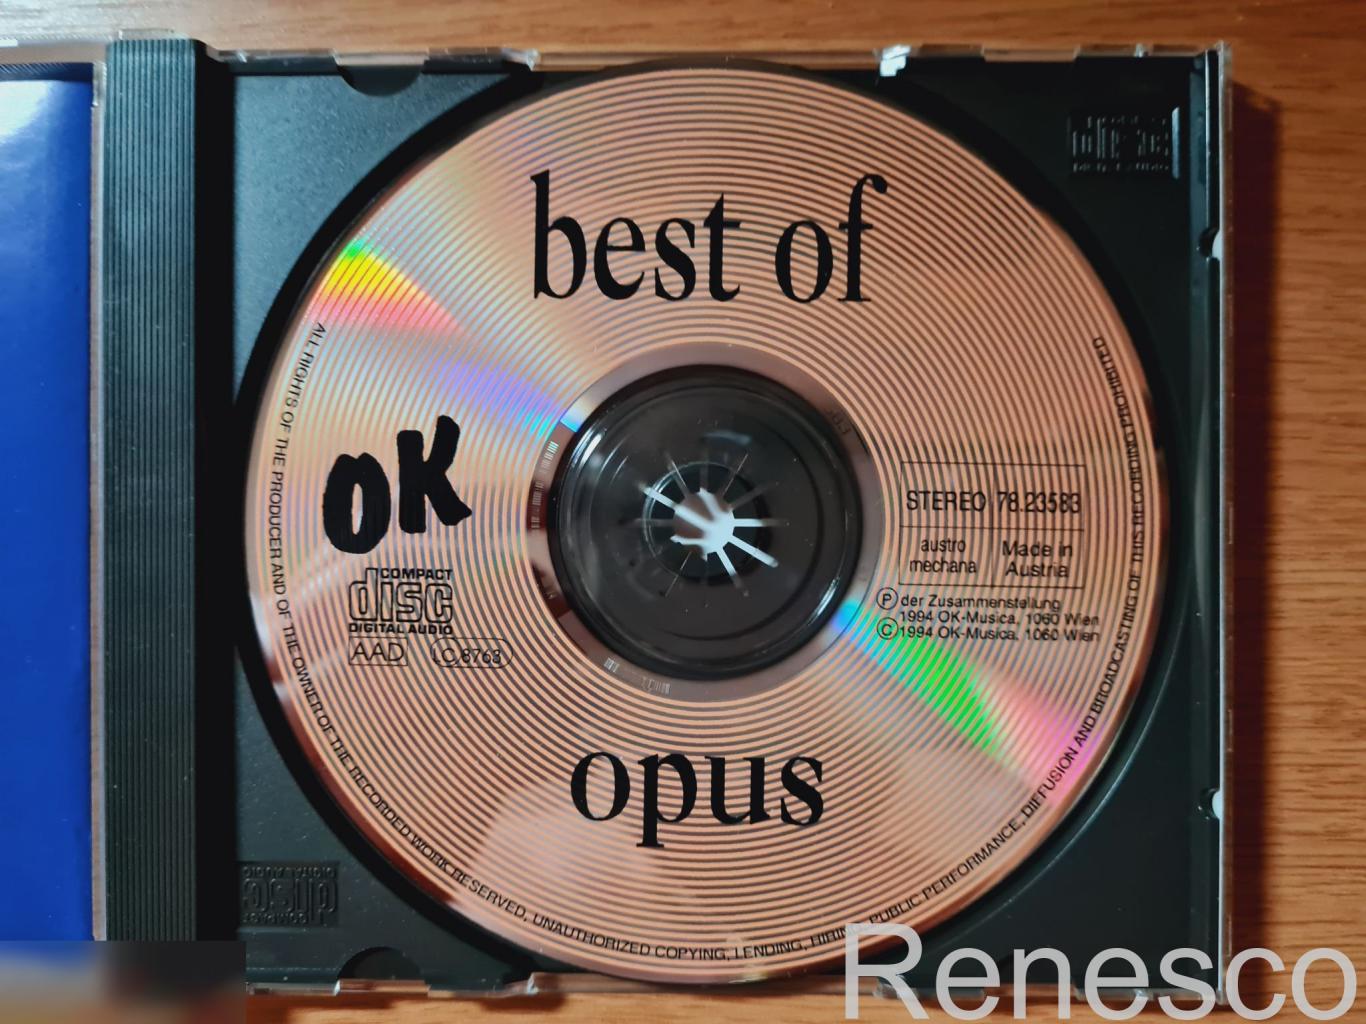 Opus ?– Best Of (Austria) (1994) 4